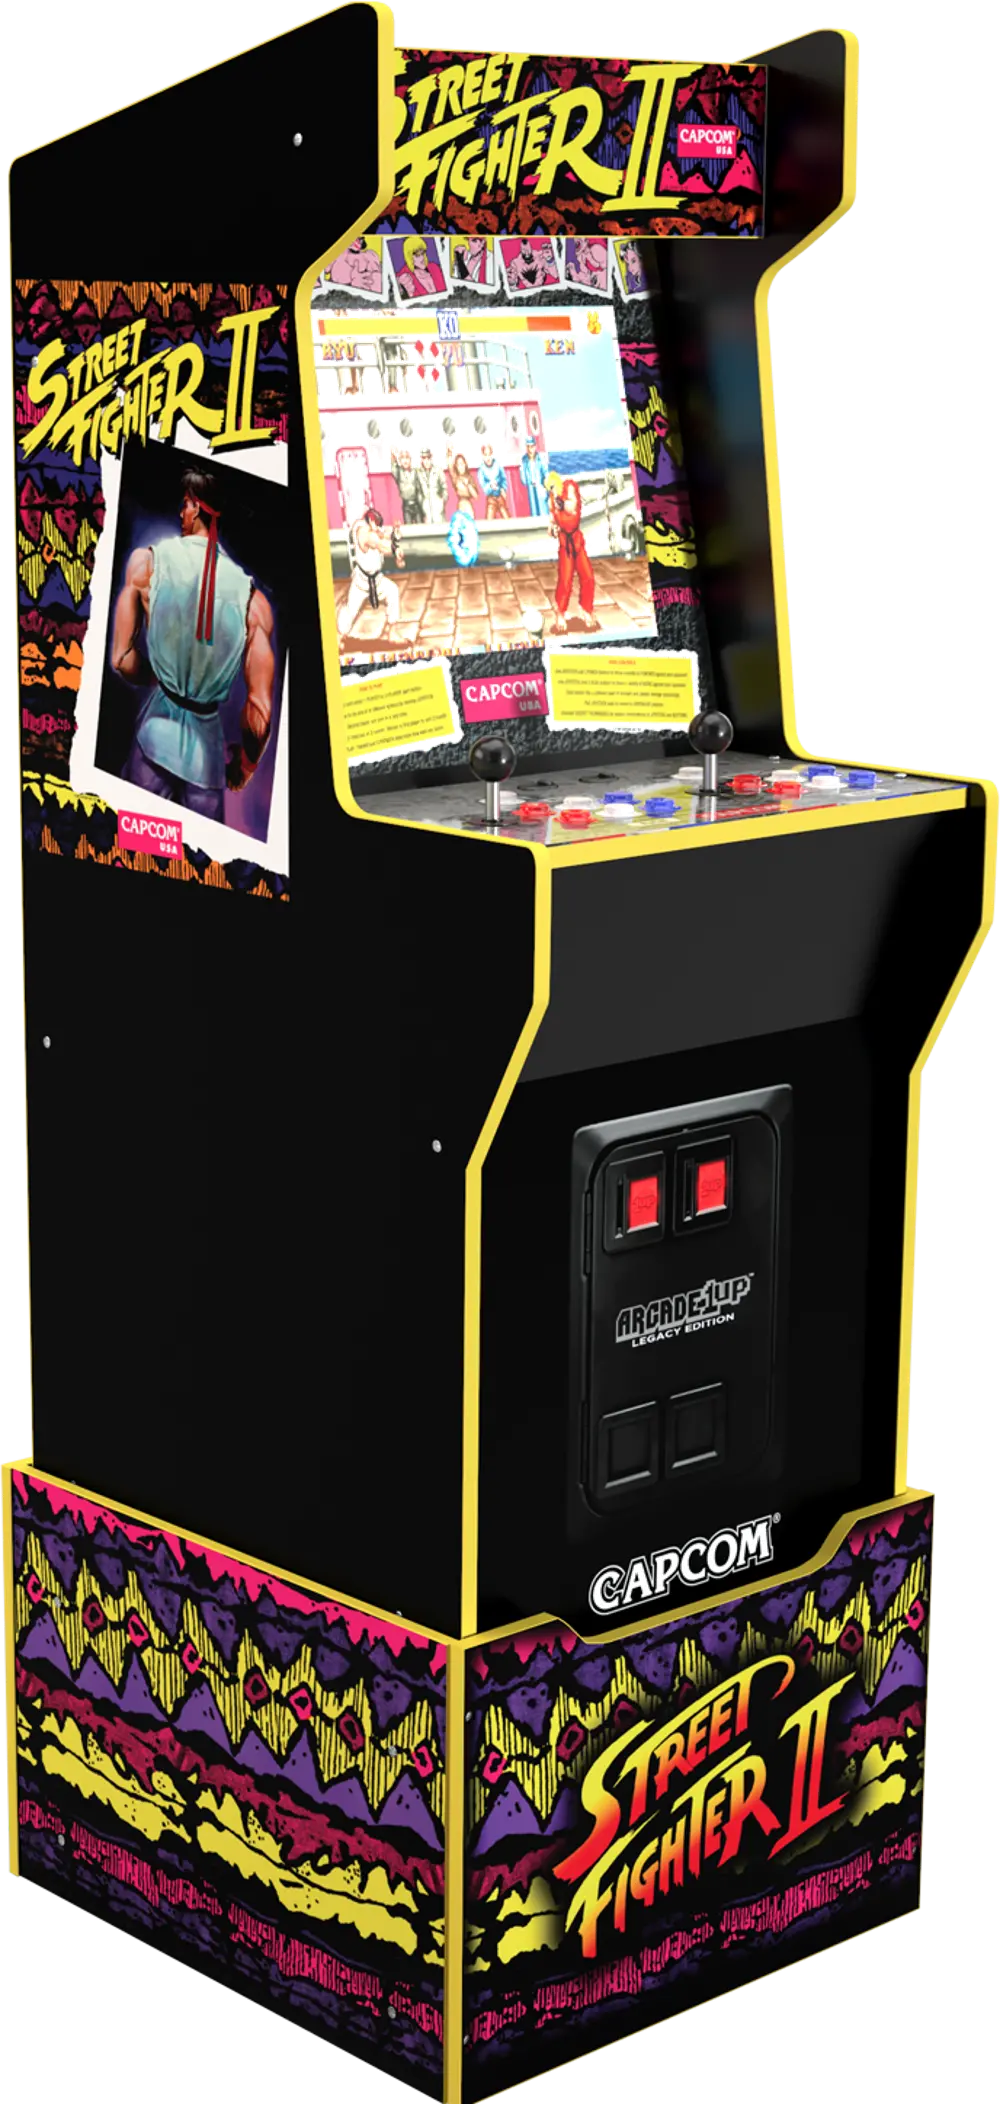 ARCADE1UP/CAPCOM Arcade 1Up Capcom Legacy Edition Arcade Cabinet-1